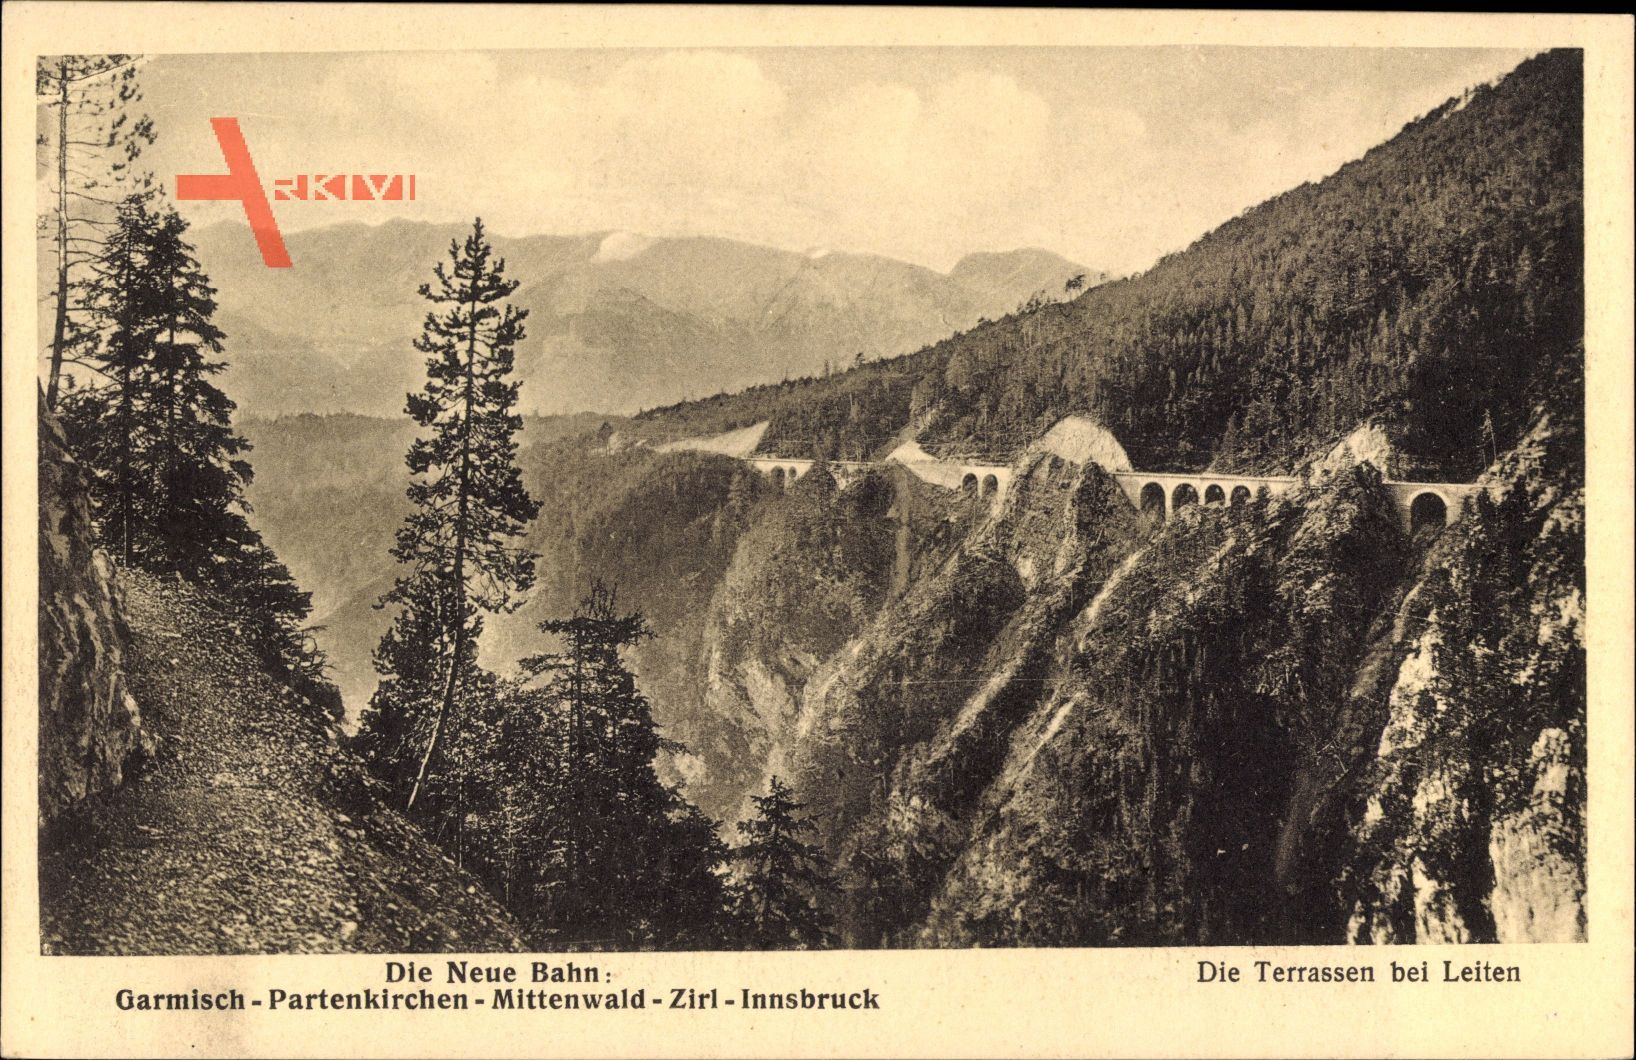 Die Neue Bahn, Garmisch Partenkirchen, Mittenwald, Zirl, Innsbruck